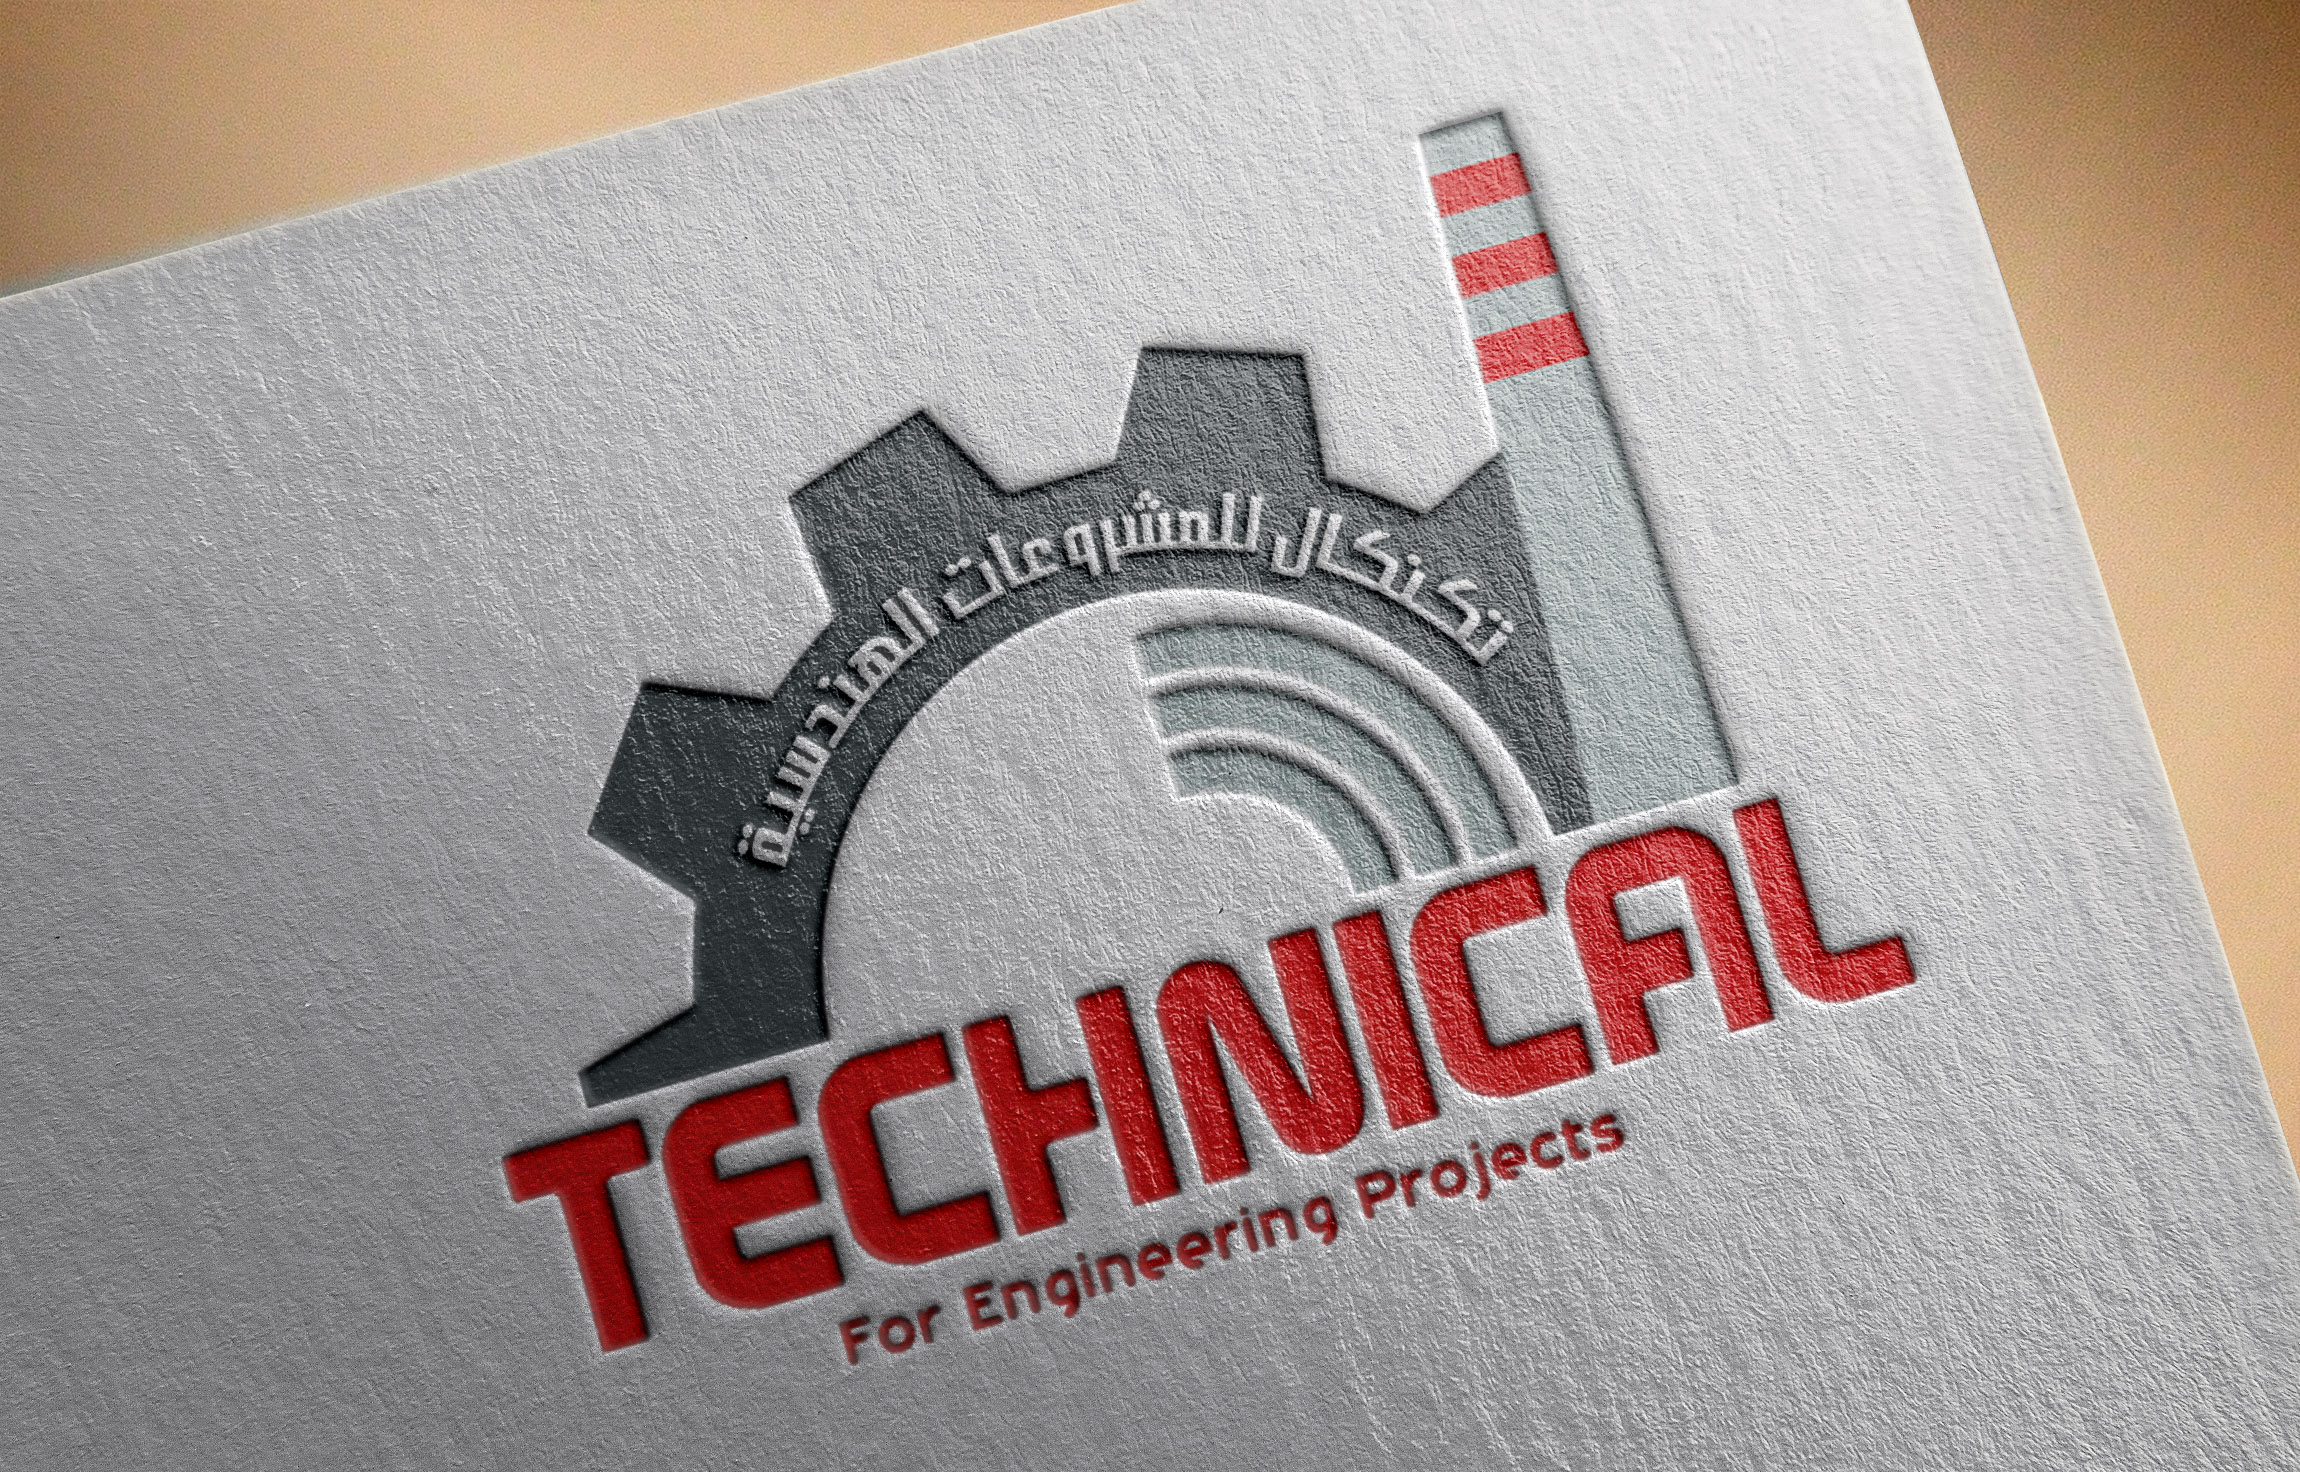 موك أب تصميم شعار شركة تكنكال للمشروعات الهندسية 2